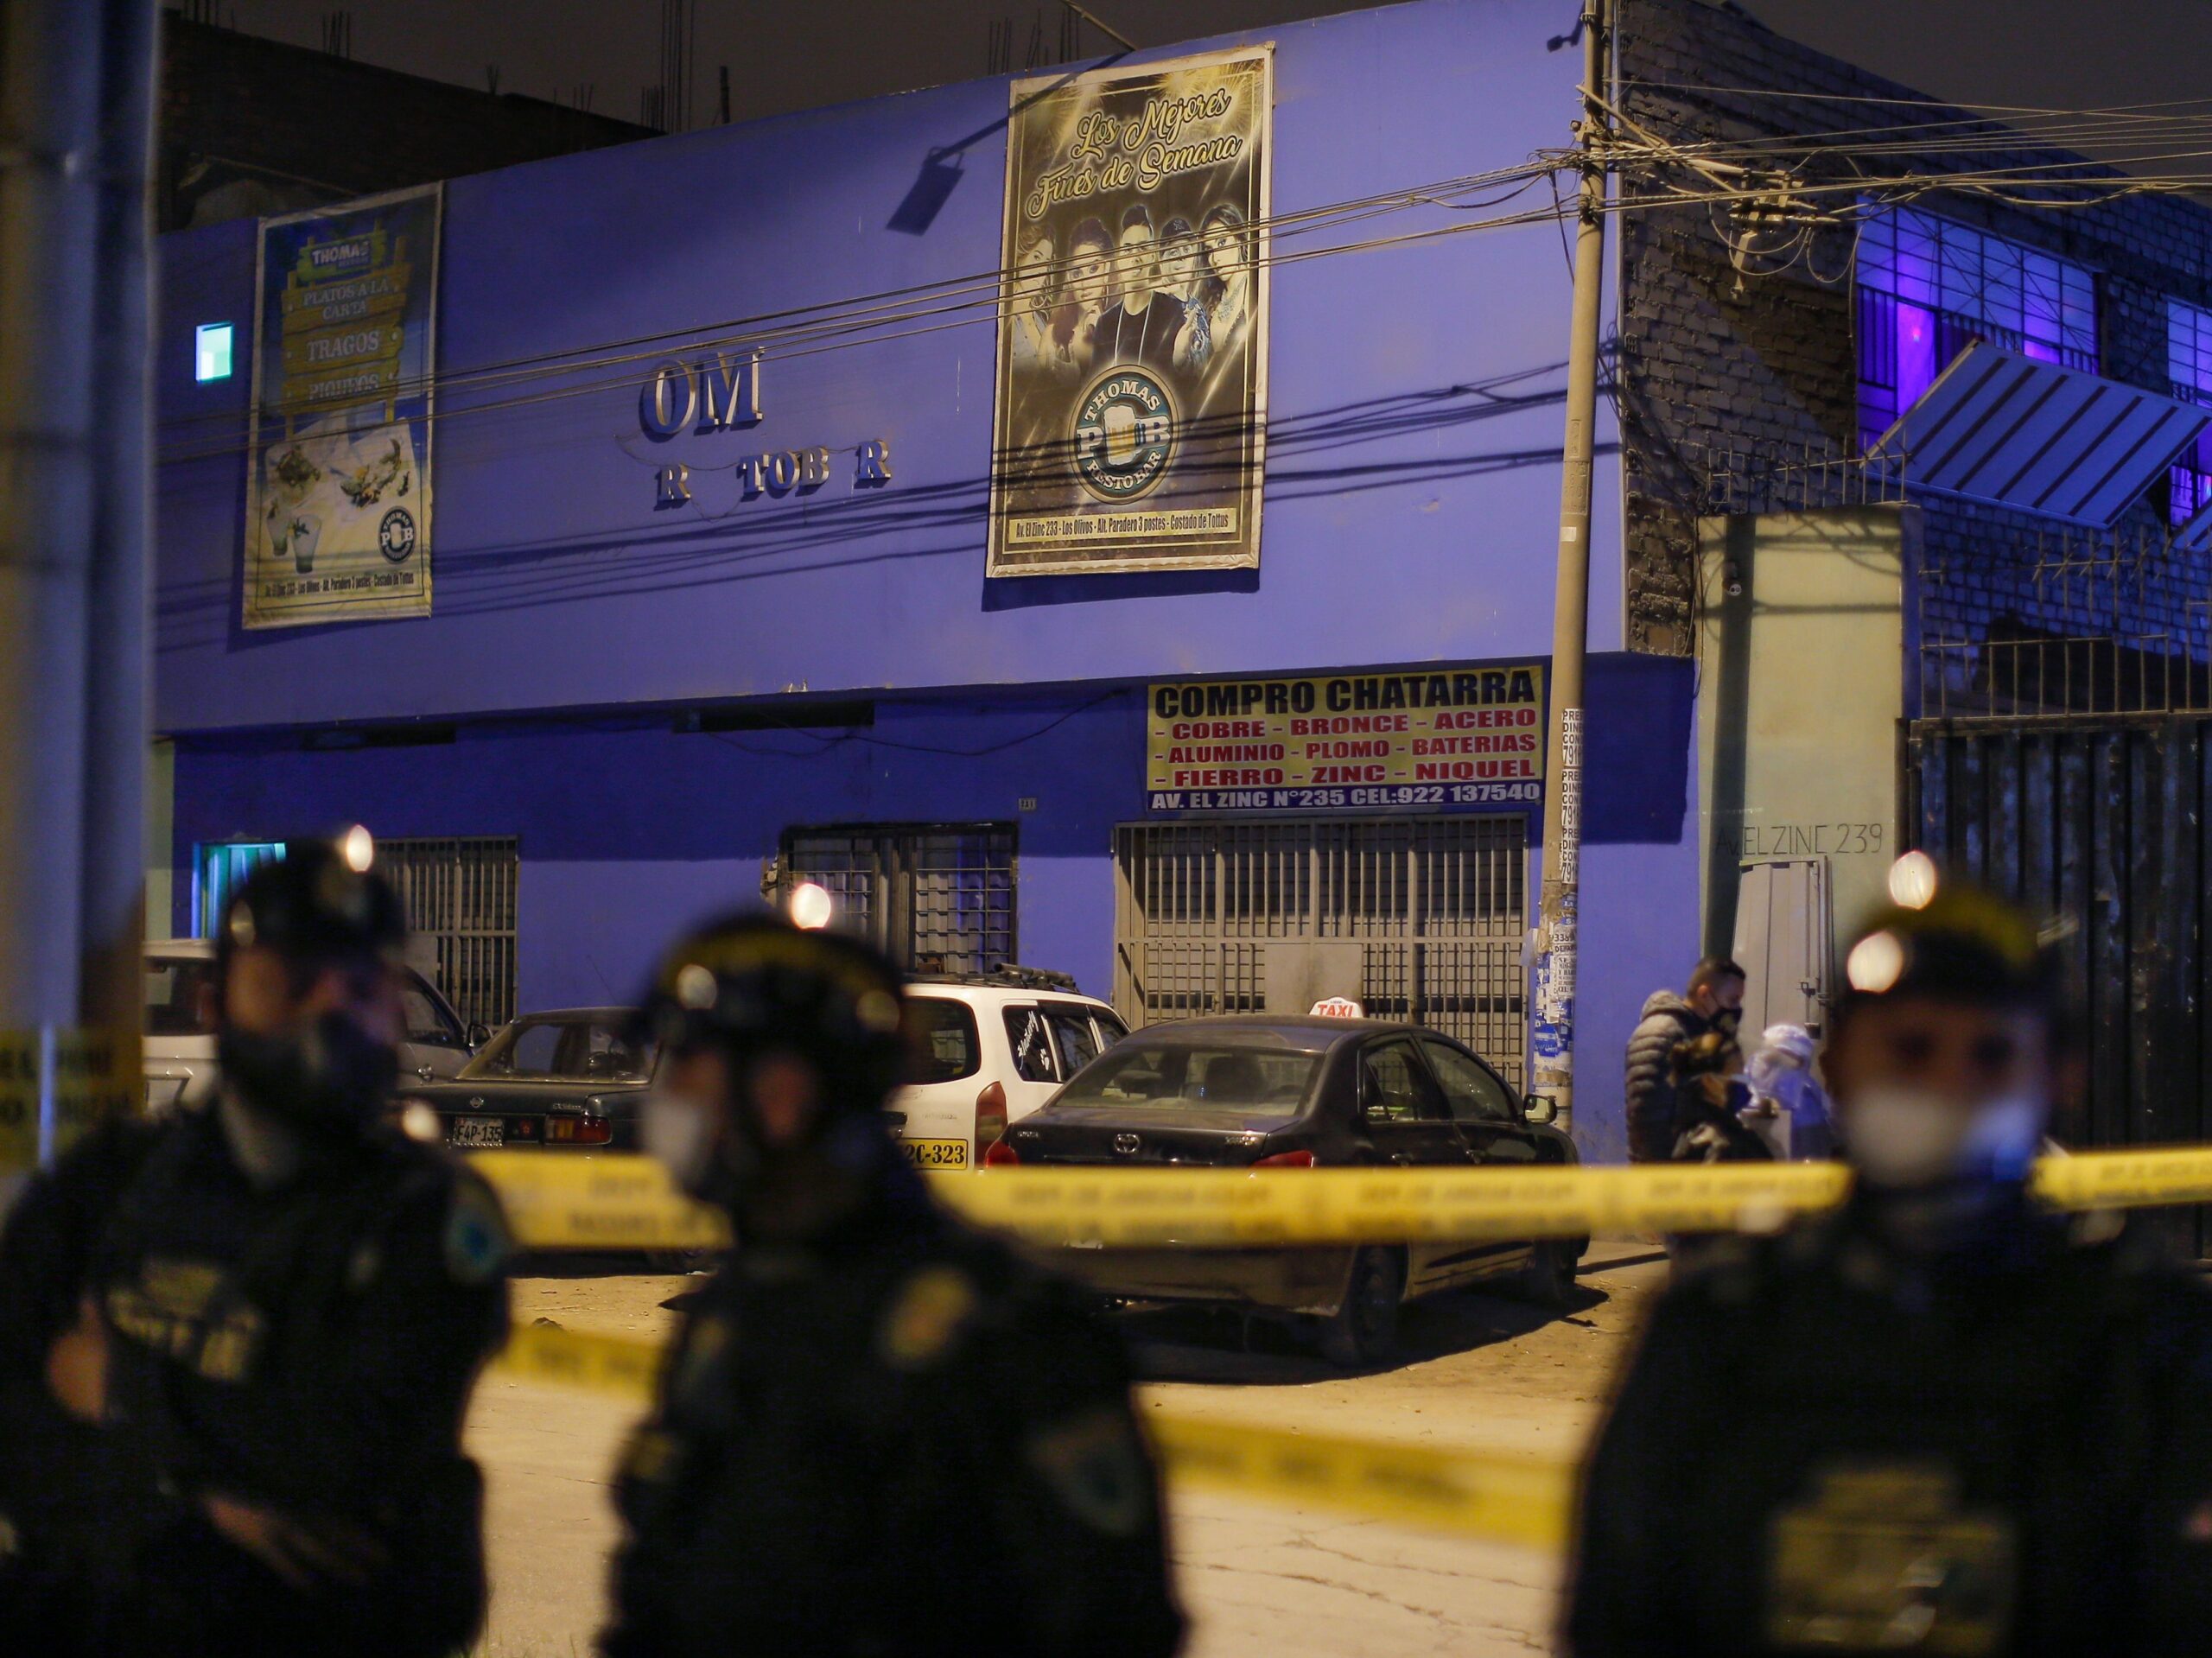 13 Killed In Stampede At Peru Nightclub Operating Against Health Orders